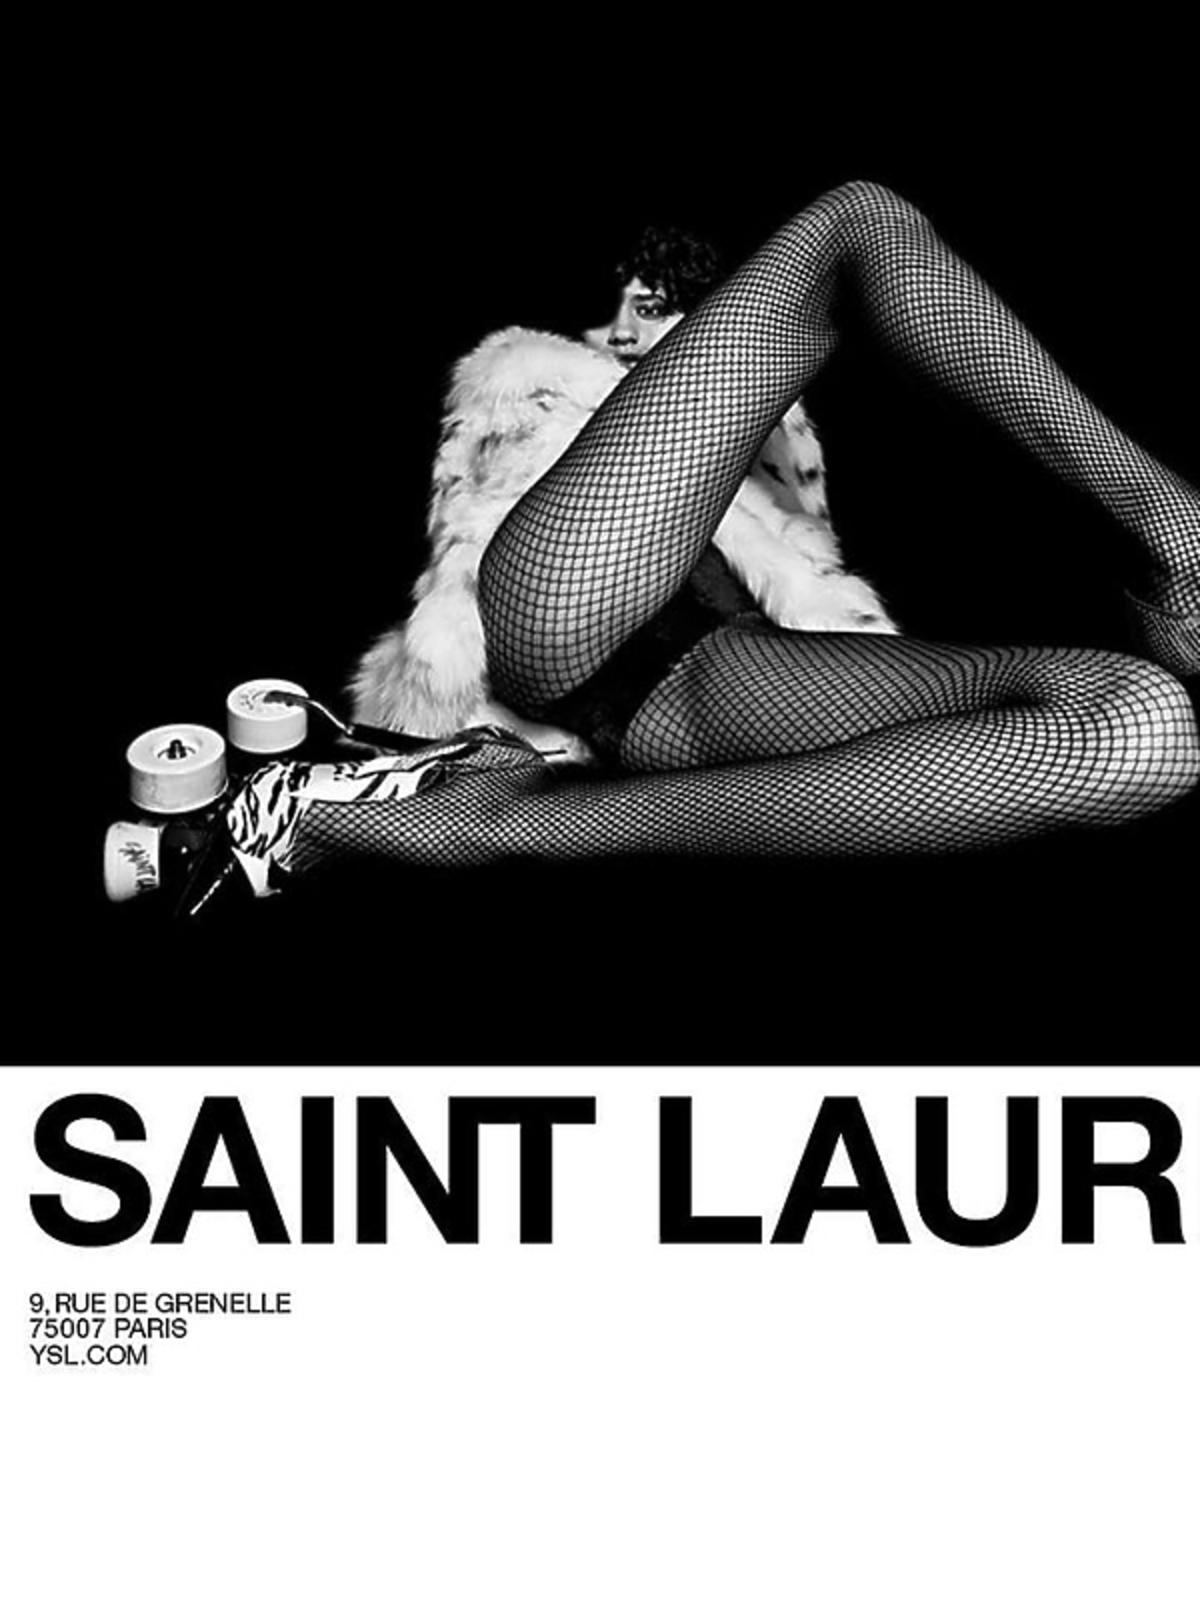 Kontrowersyjna kampania Saint Laurent z za chudą modelką